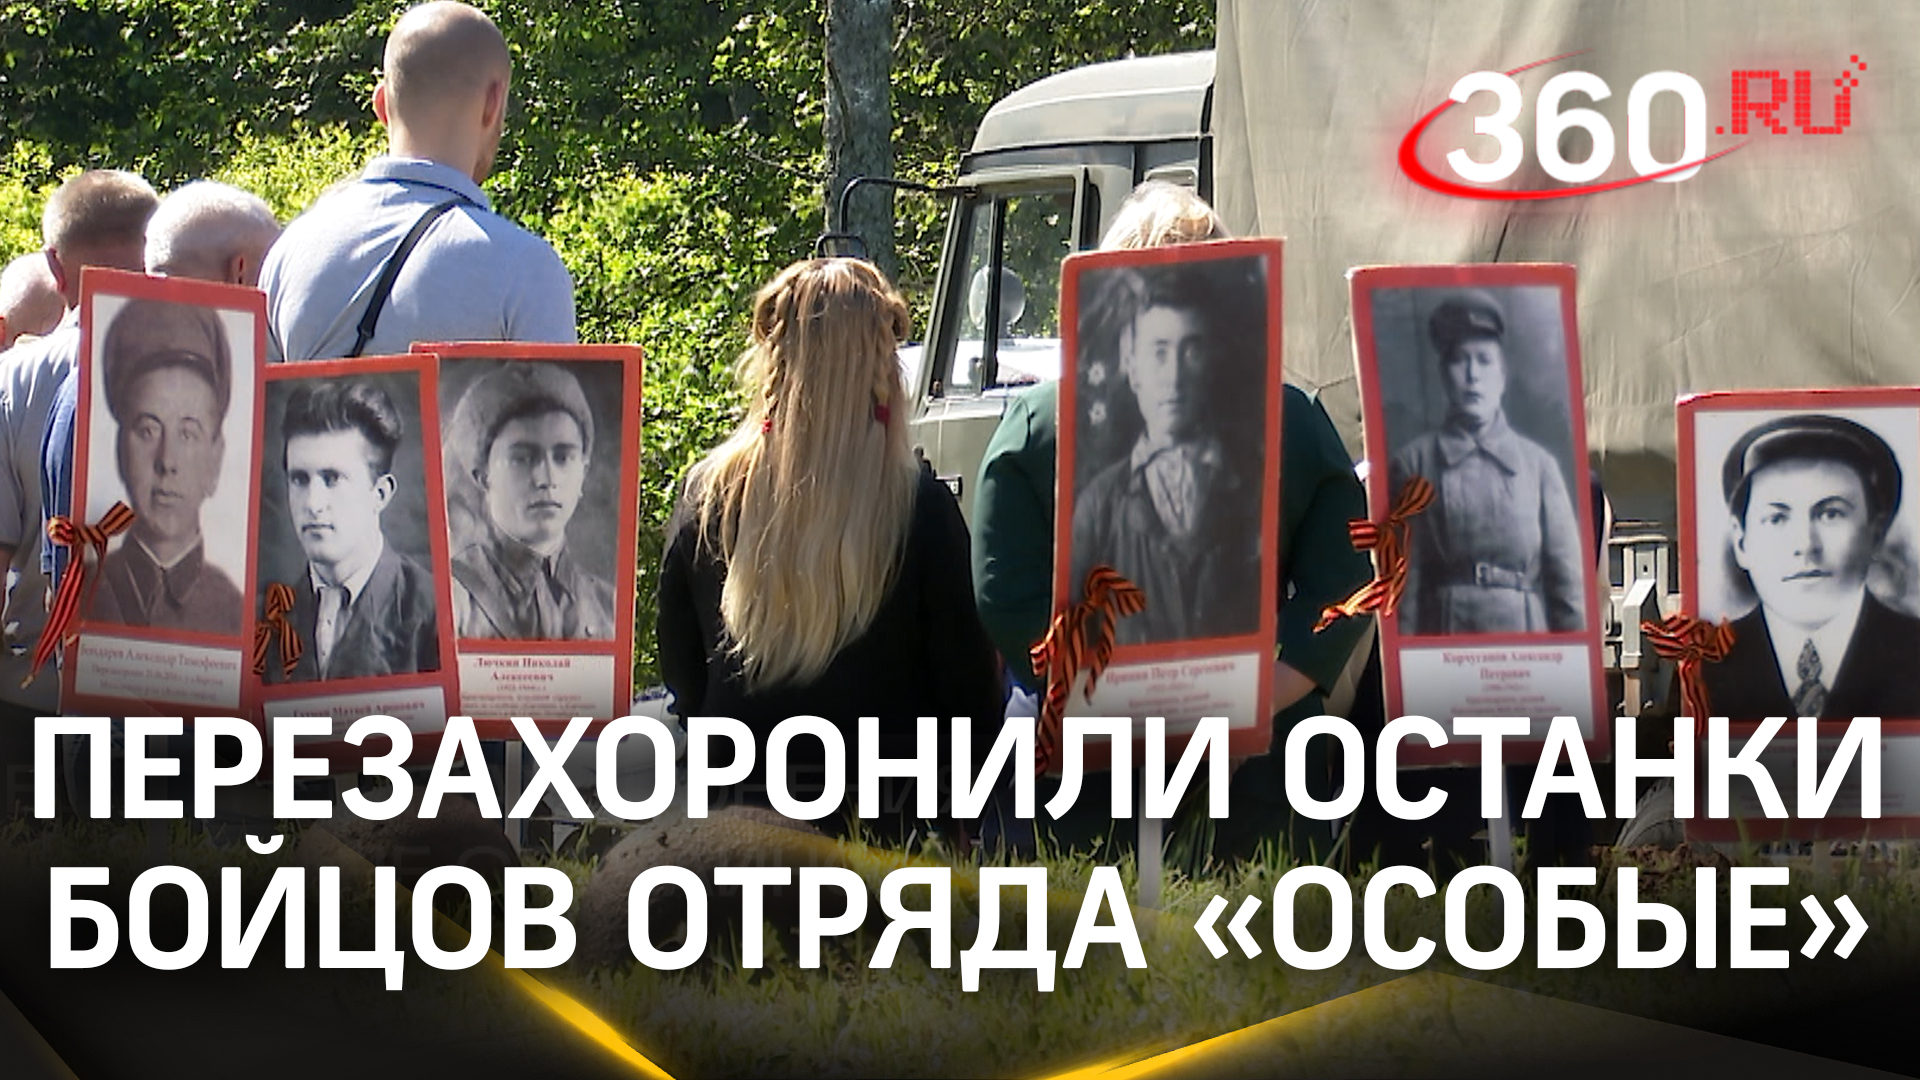 Останки бойцов отряда «Особые» перезахоронили в Калужской области